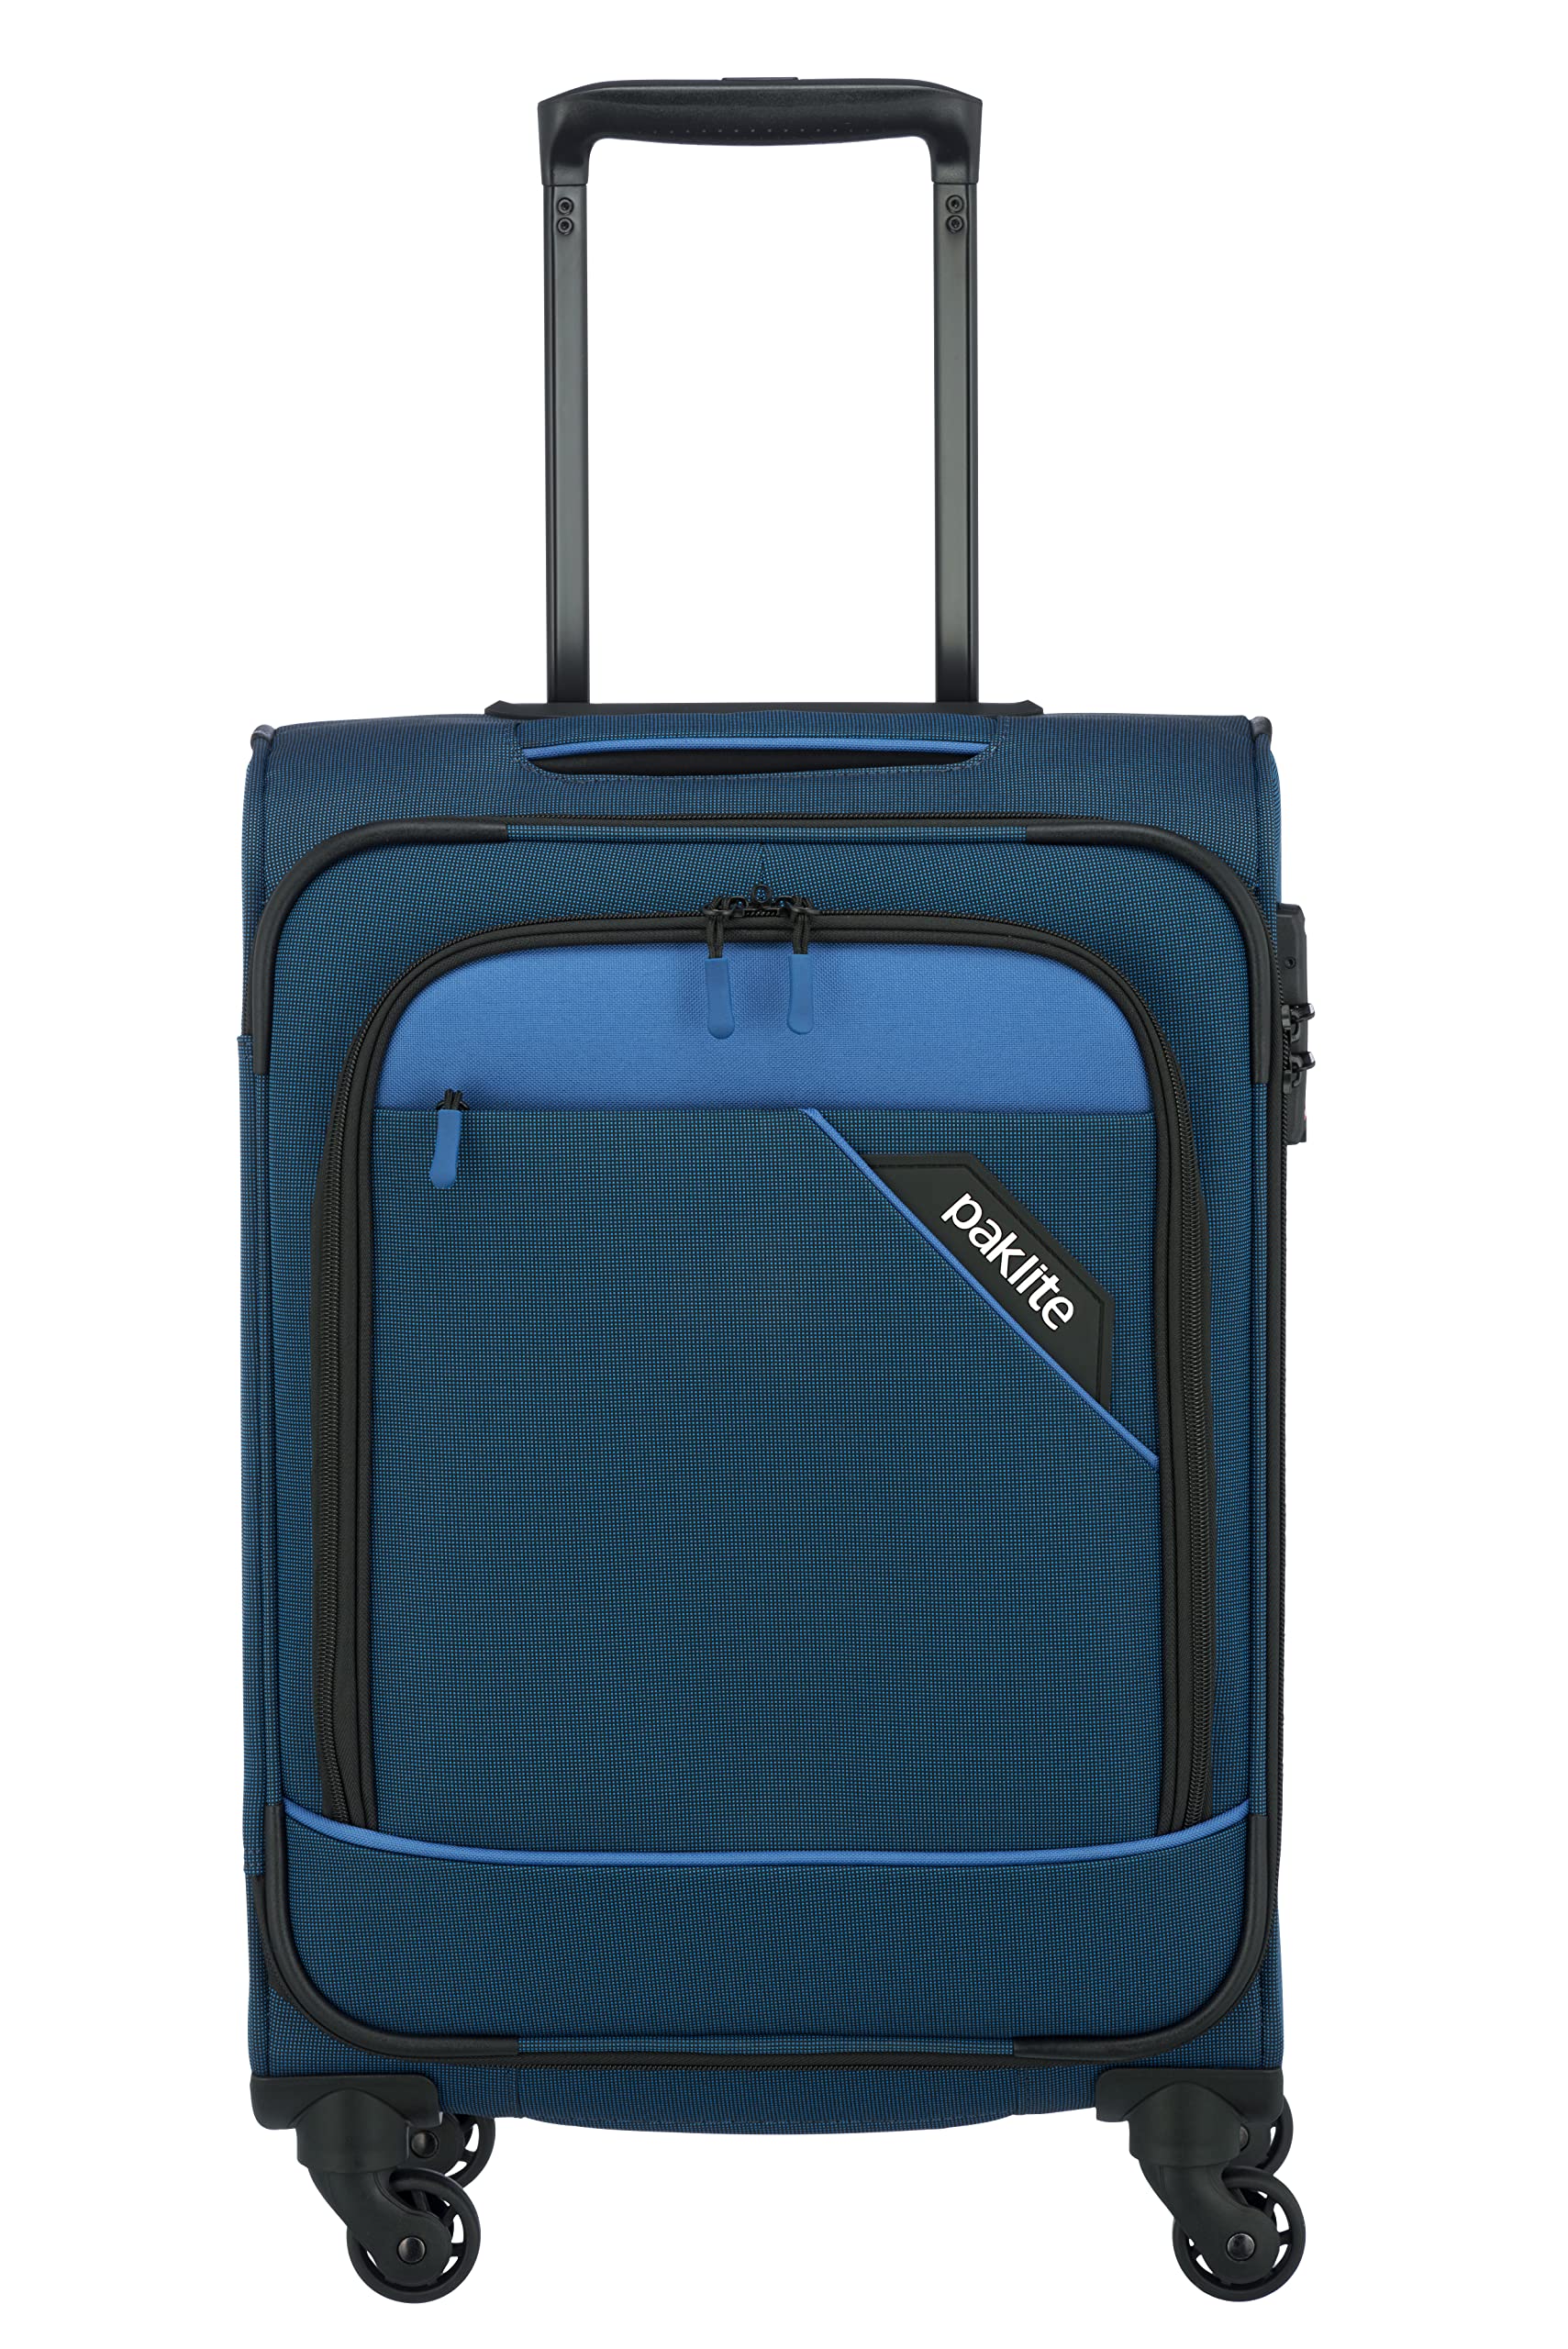 Travelite paklite 4-Rad Weichgepäck Koffer Handgepäck erfüllt IATA Bordgepäck Maß mit TSA Schloss + Aufsteckfunktion, Gepäck Serie DERBY: Stilvoller Trolley in Two-Tone-Optik, 55 cm, 41 Liter, Blau